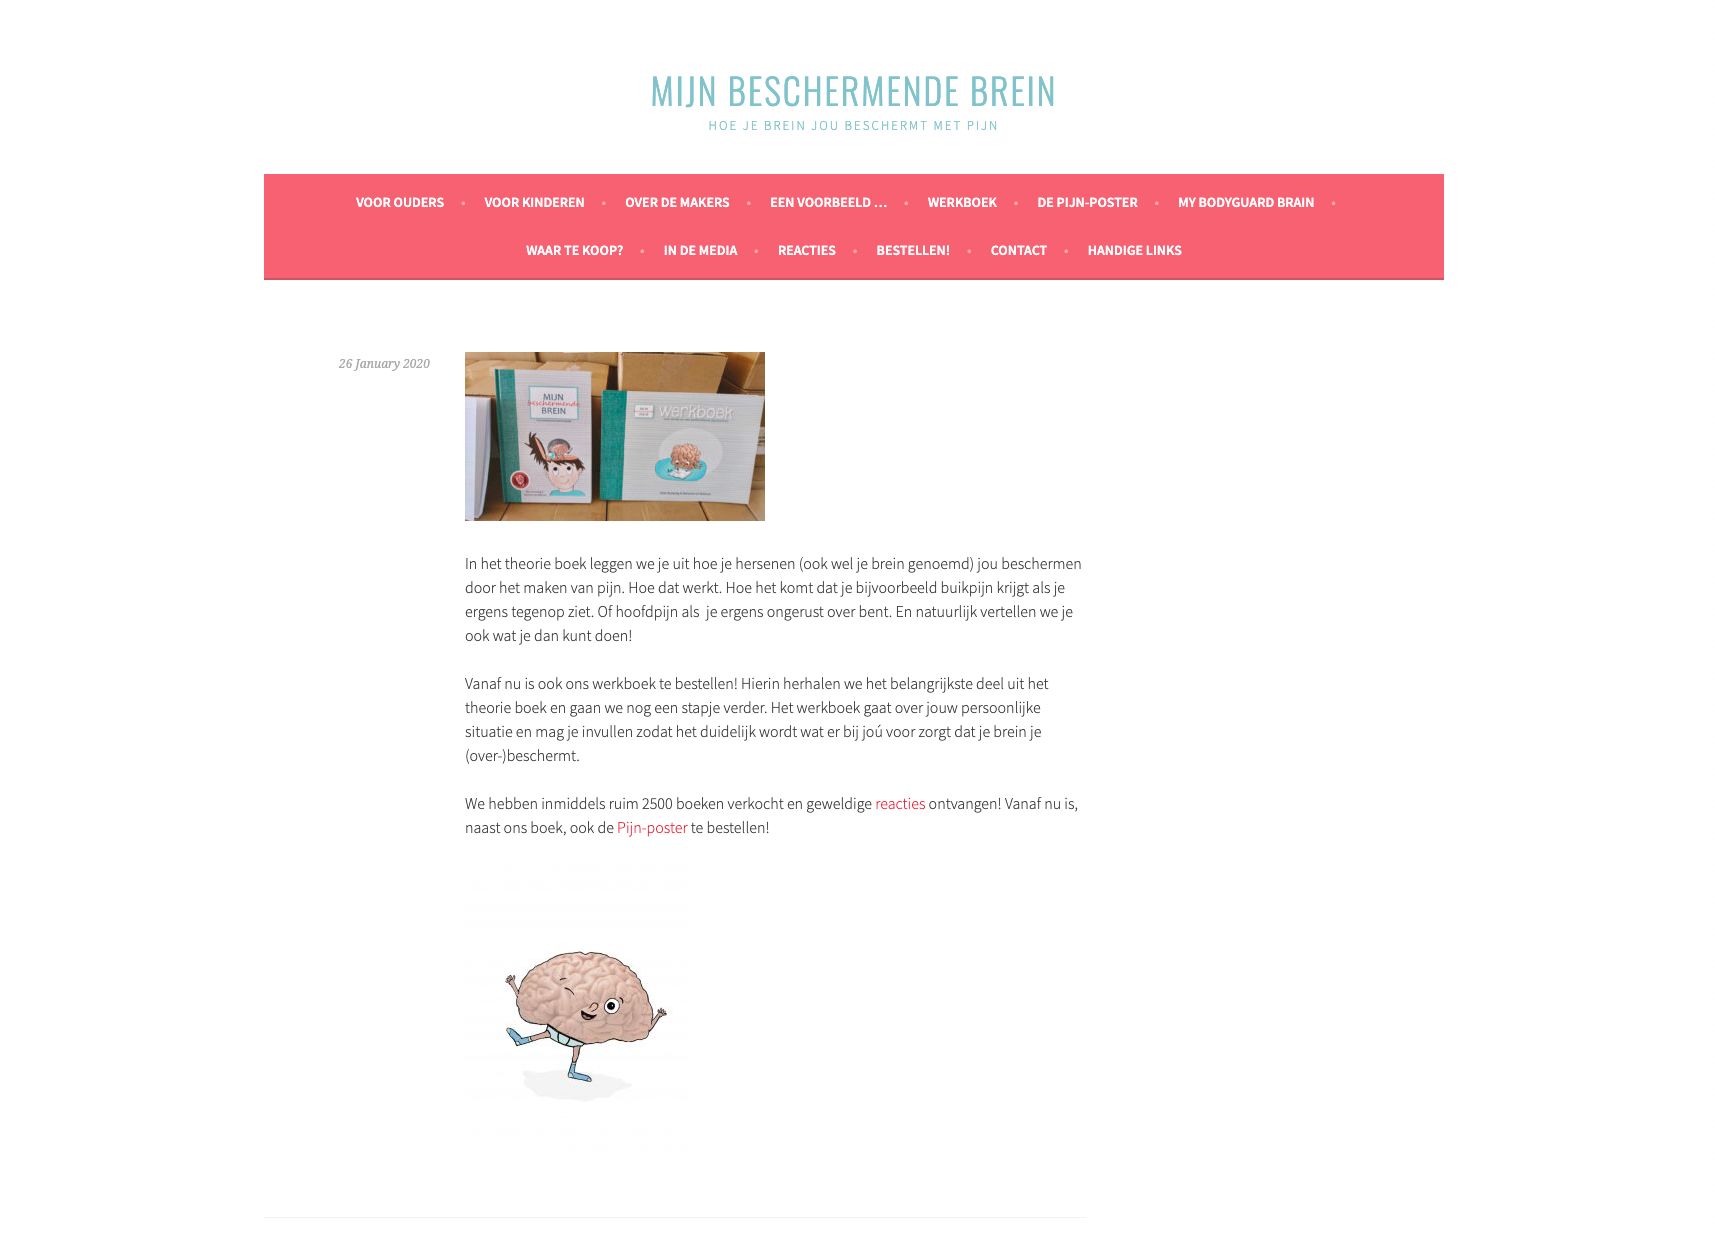 Website van het boek ‘mijn beschermende pijn’, waarin wordt uitgelegd hoe je hersenen met verschillende soorten pijn omgaan